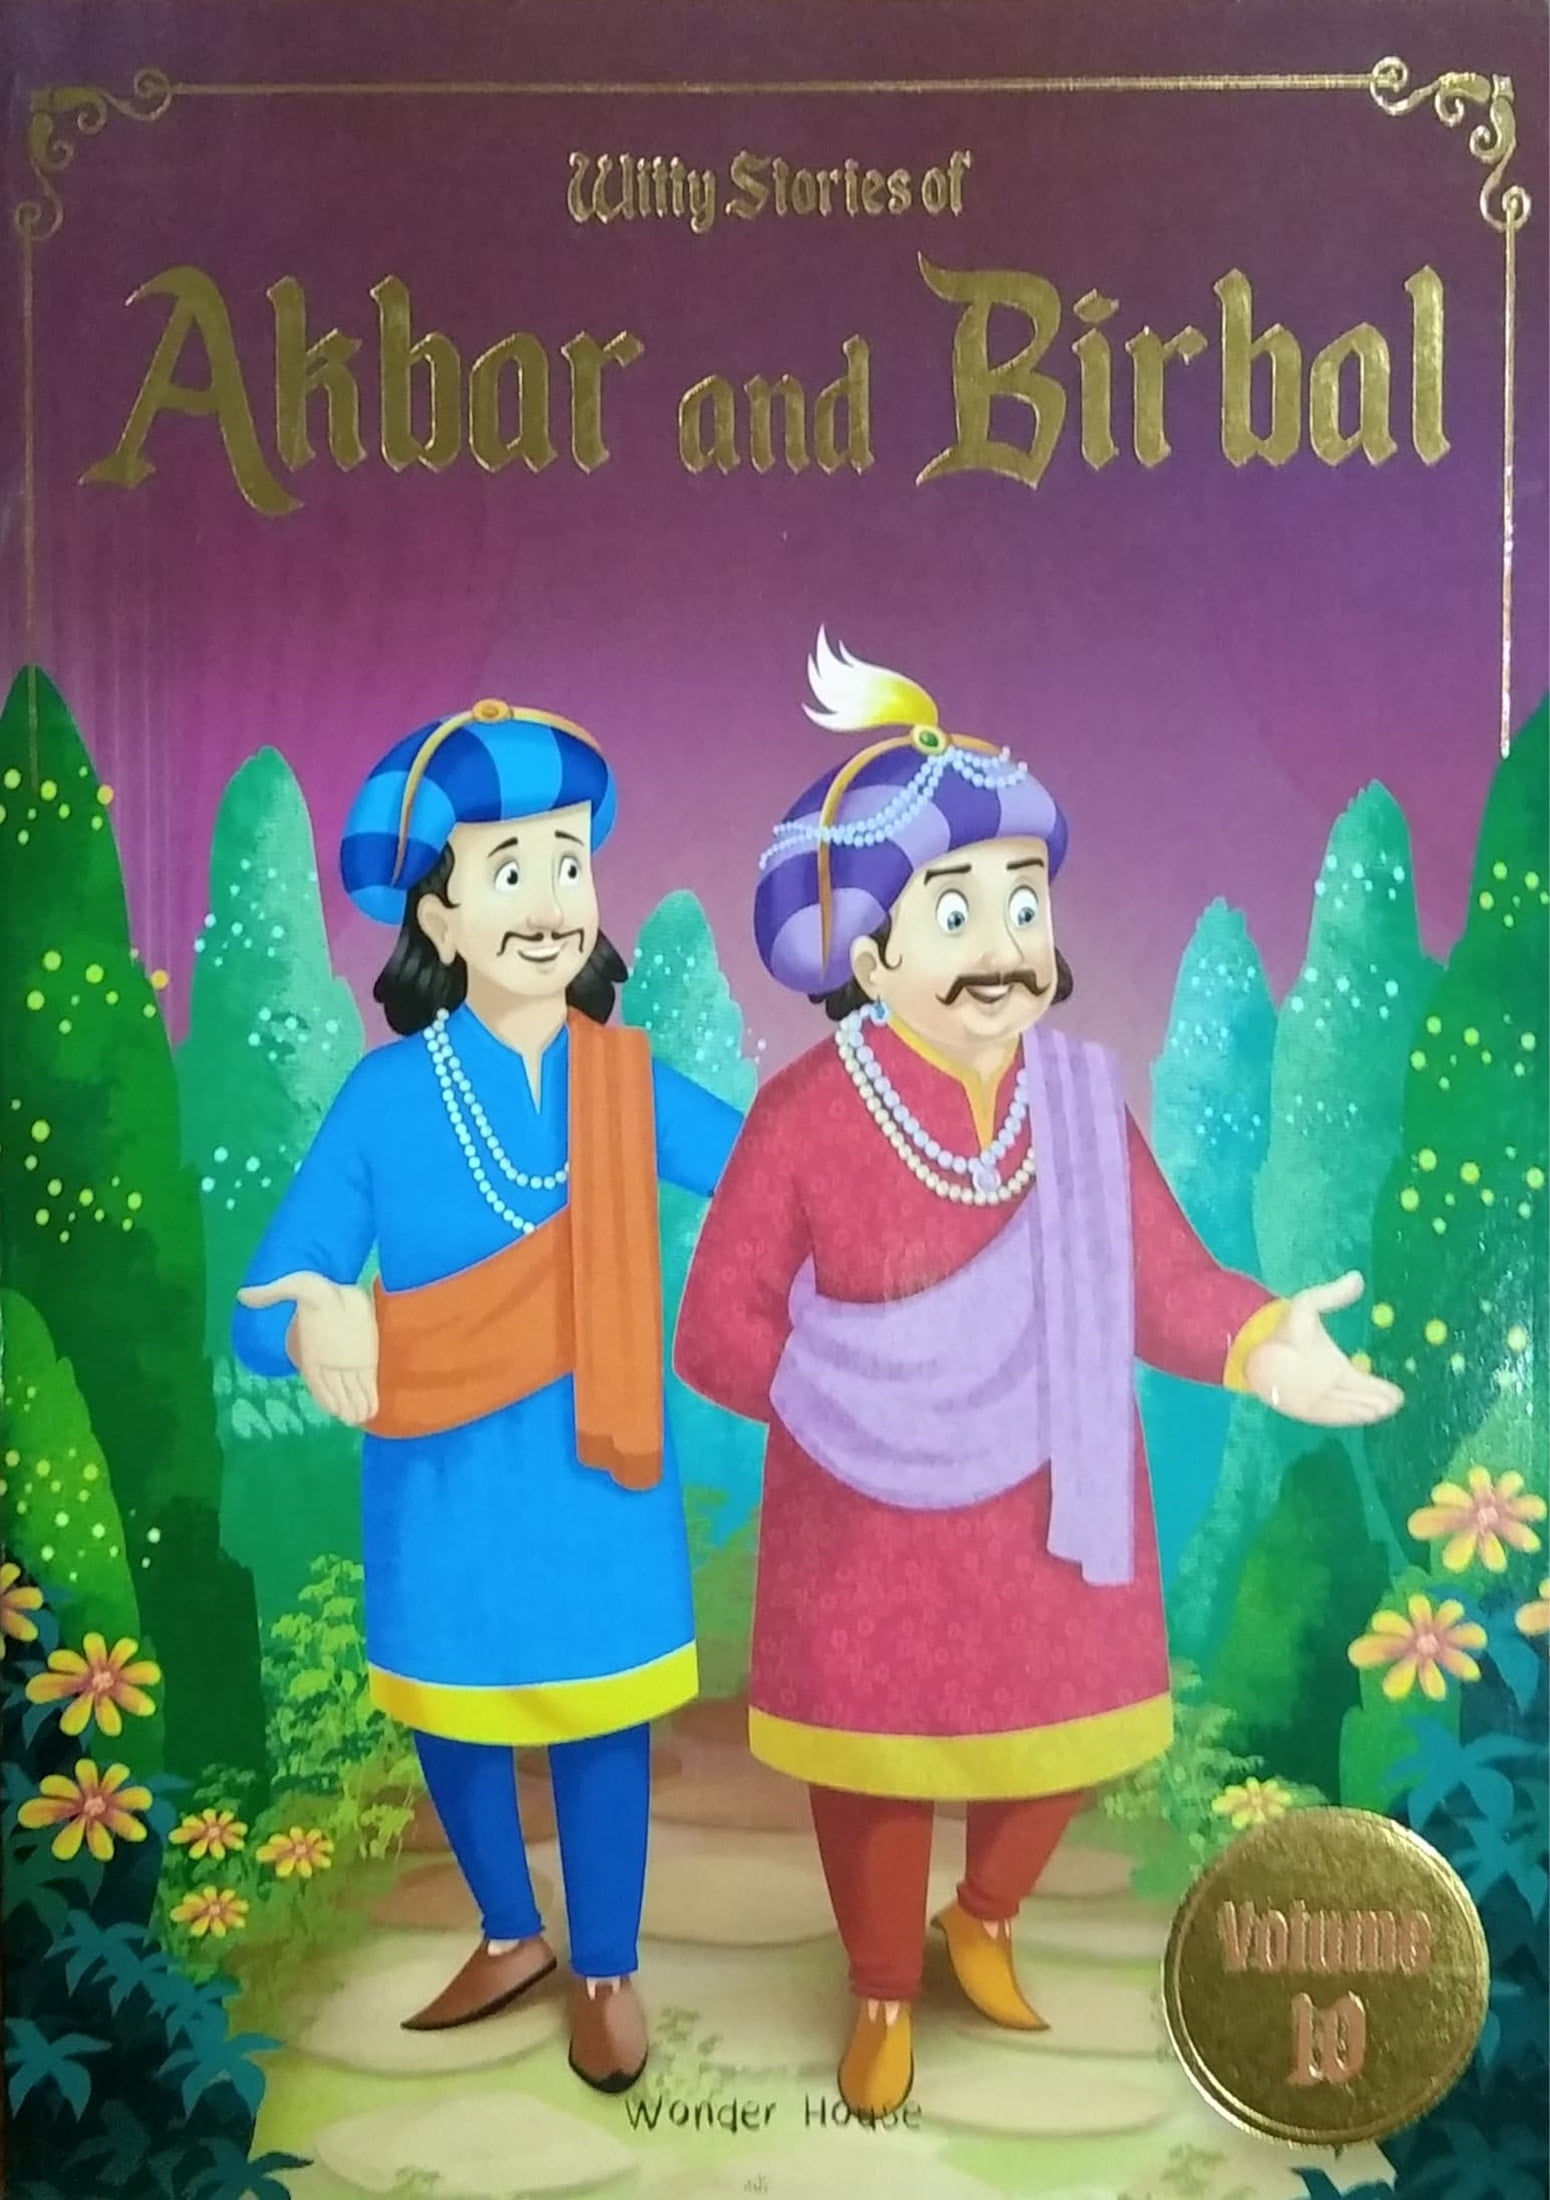 Witty Stories of Akbar and Birbal - 10 – Harivu Books